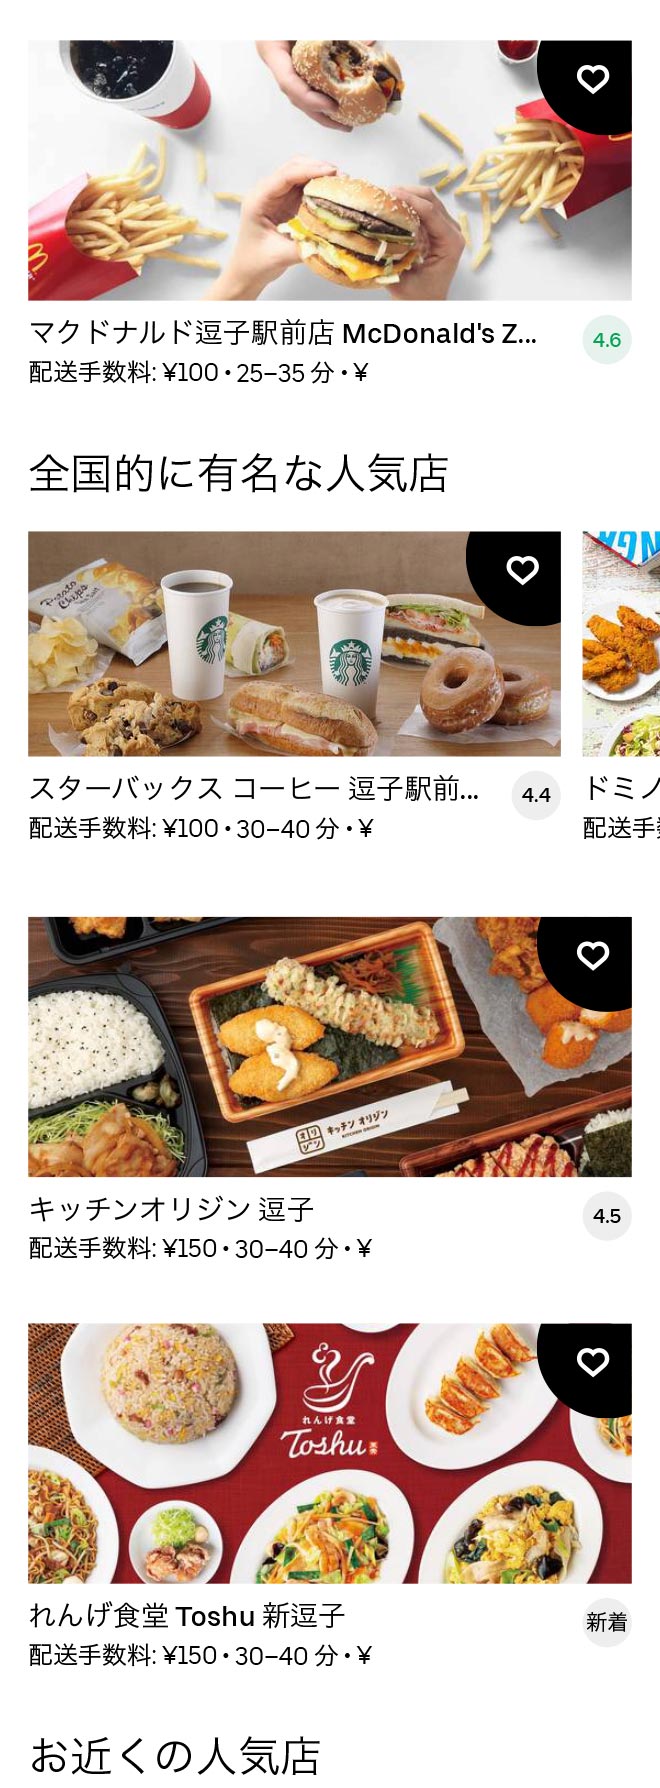 Zushi menu 2012 01